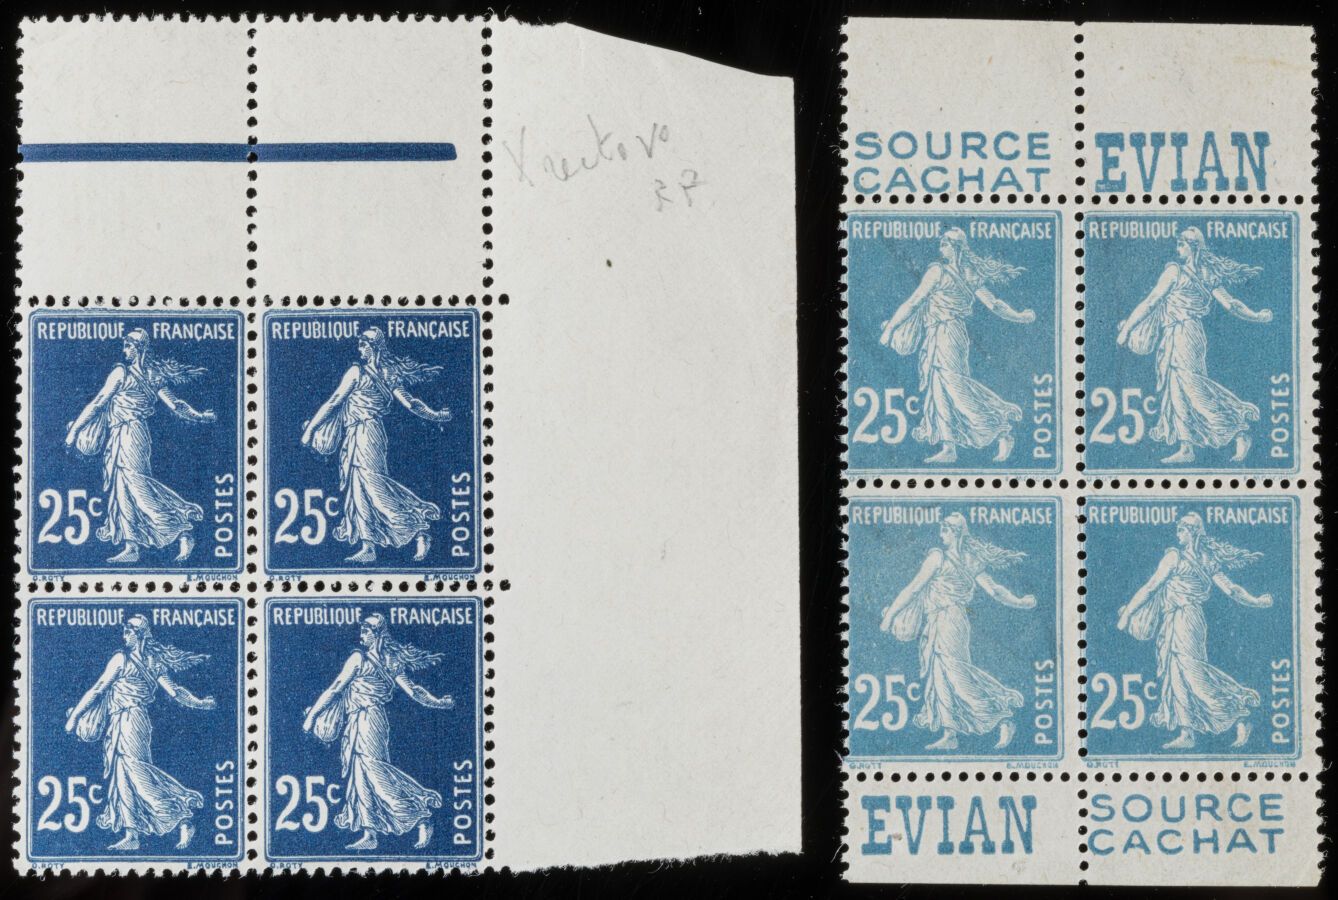 Null Sello N°140s - Bloque de 4 sellos con impresión Recto-verso + Variedad, int&hellip;